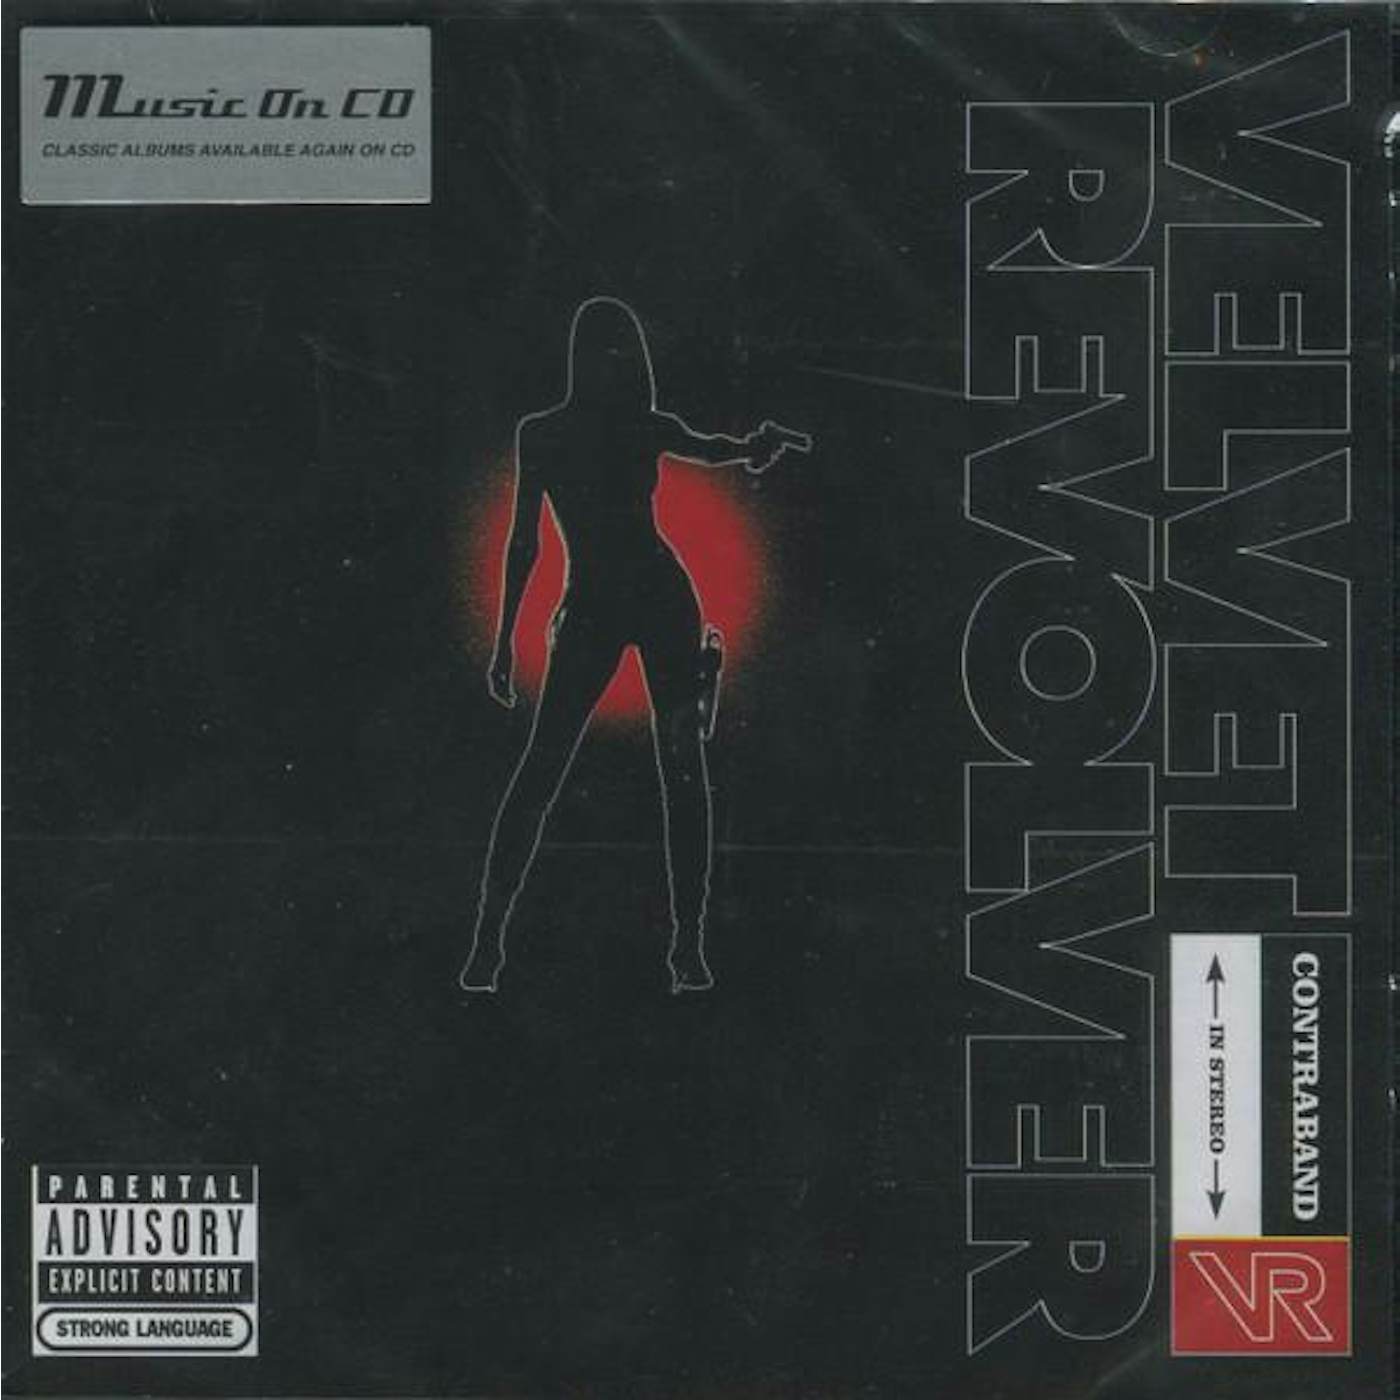 Velvet Revolver CONTRABAND CD